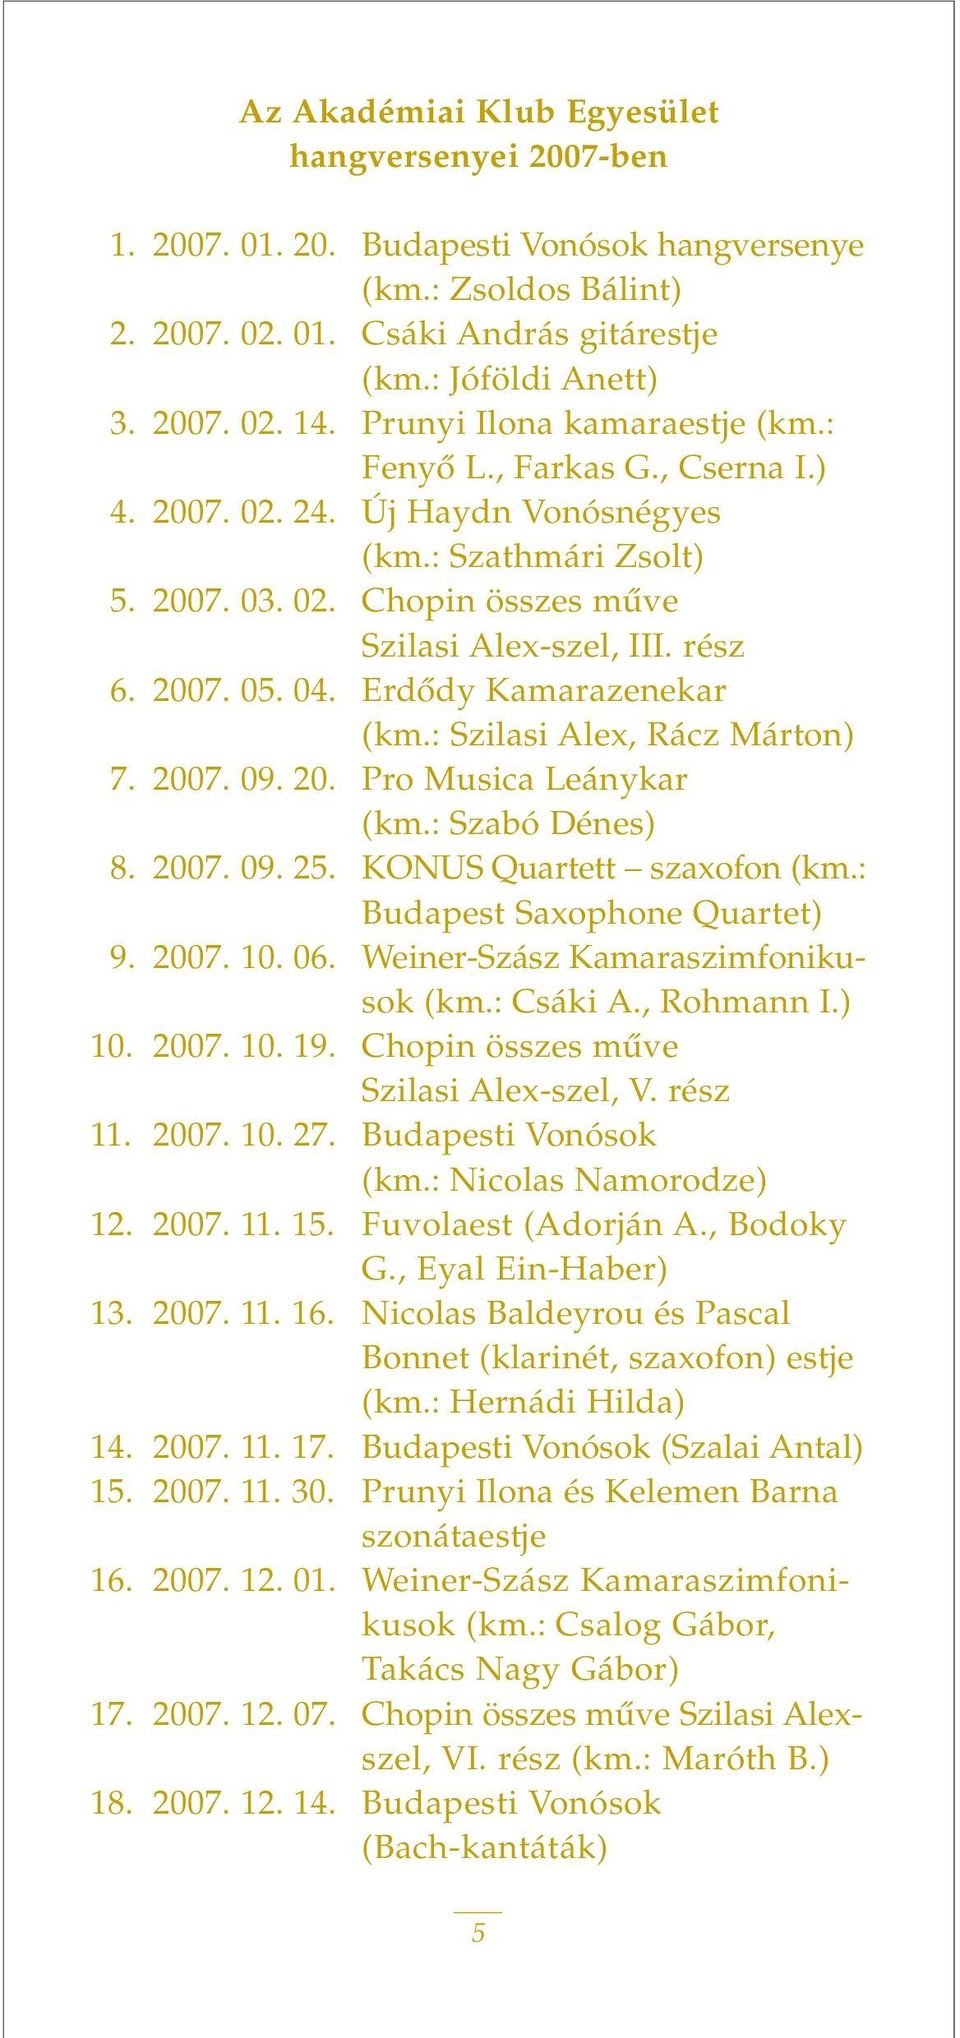 04. Erdôdy Kamarazenekar (km.: Szilasi Alex, Rácz Márton) 7. 2007. 09. 20. Pro Musica Leánykar (km.: Szabó Dénes) 8. 2007. 09. 25. KONUS Quartett szaxofon (km.: Budapest Saxophone Quartet) 9. 2007. 10.